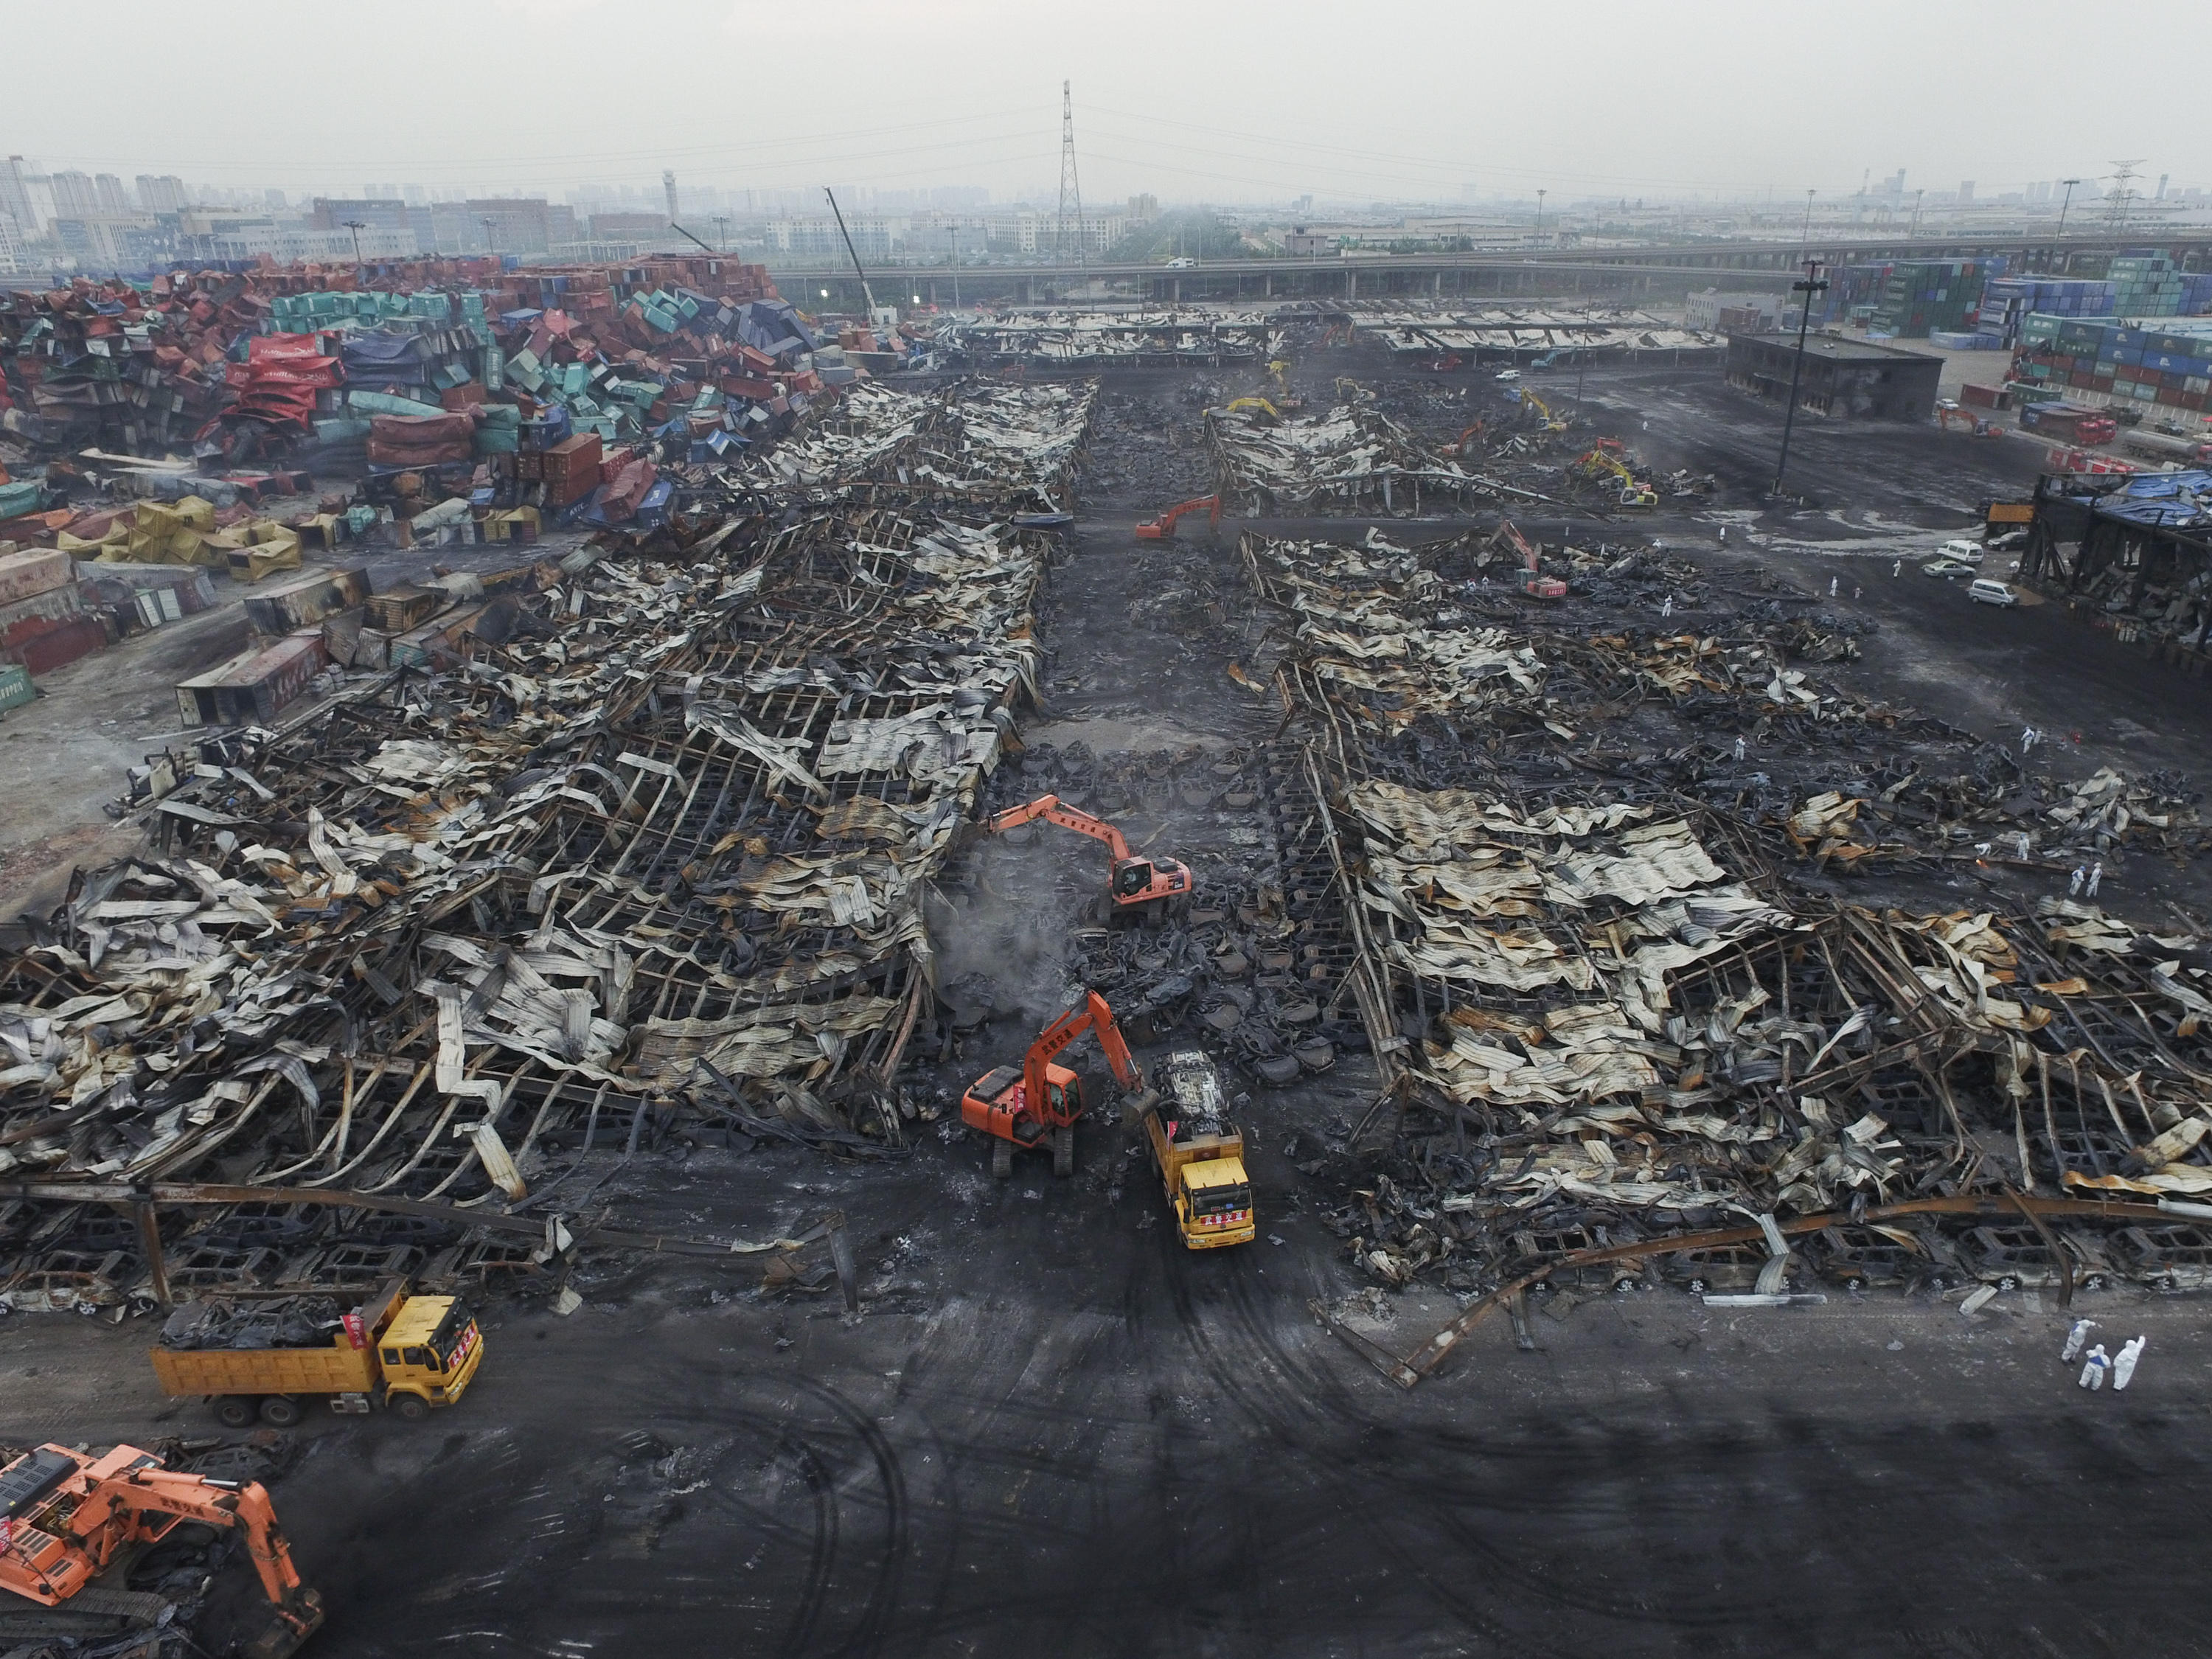 当日,记者从天津港"8·12"瑞海公司危险品仓库特别重大火灾爆炸事故